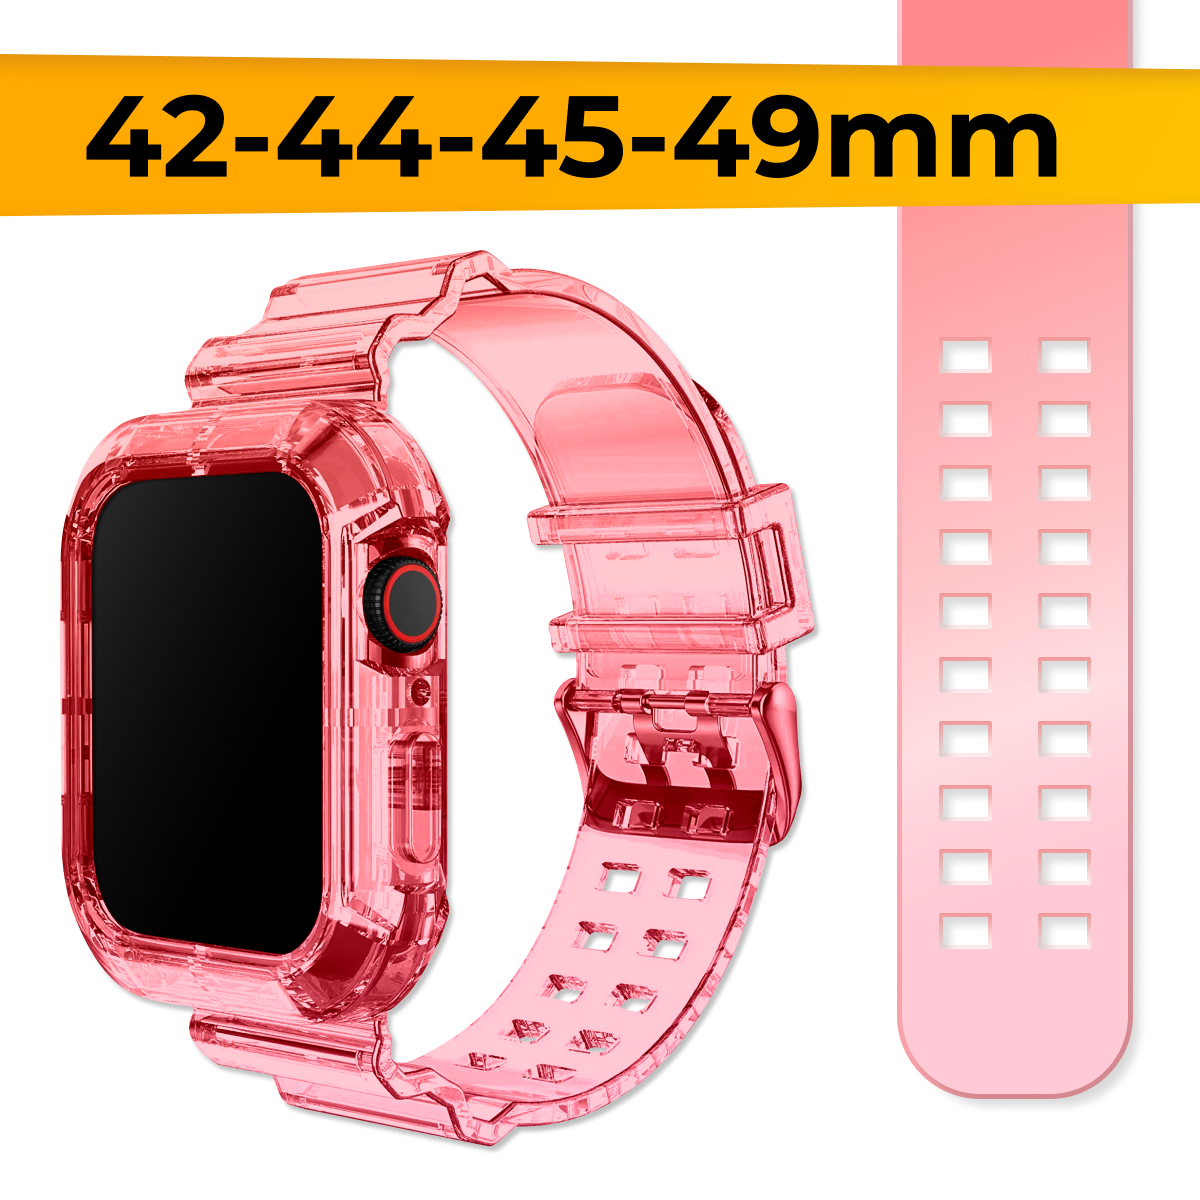 Прозрачный силиконовый ремешок для Apple Watch 1-9, SE, Ultra, 42-44-45-49 mm / Сменный браслет на часы Эпл Вотч Серии 1-9, СE, Ультра / Розово-красный